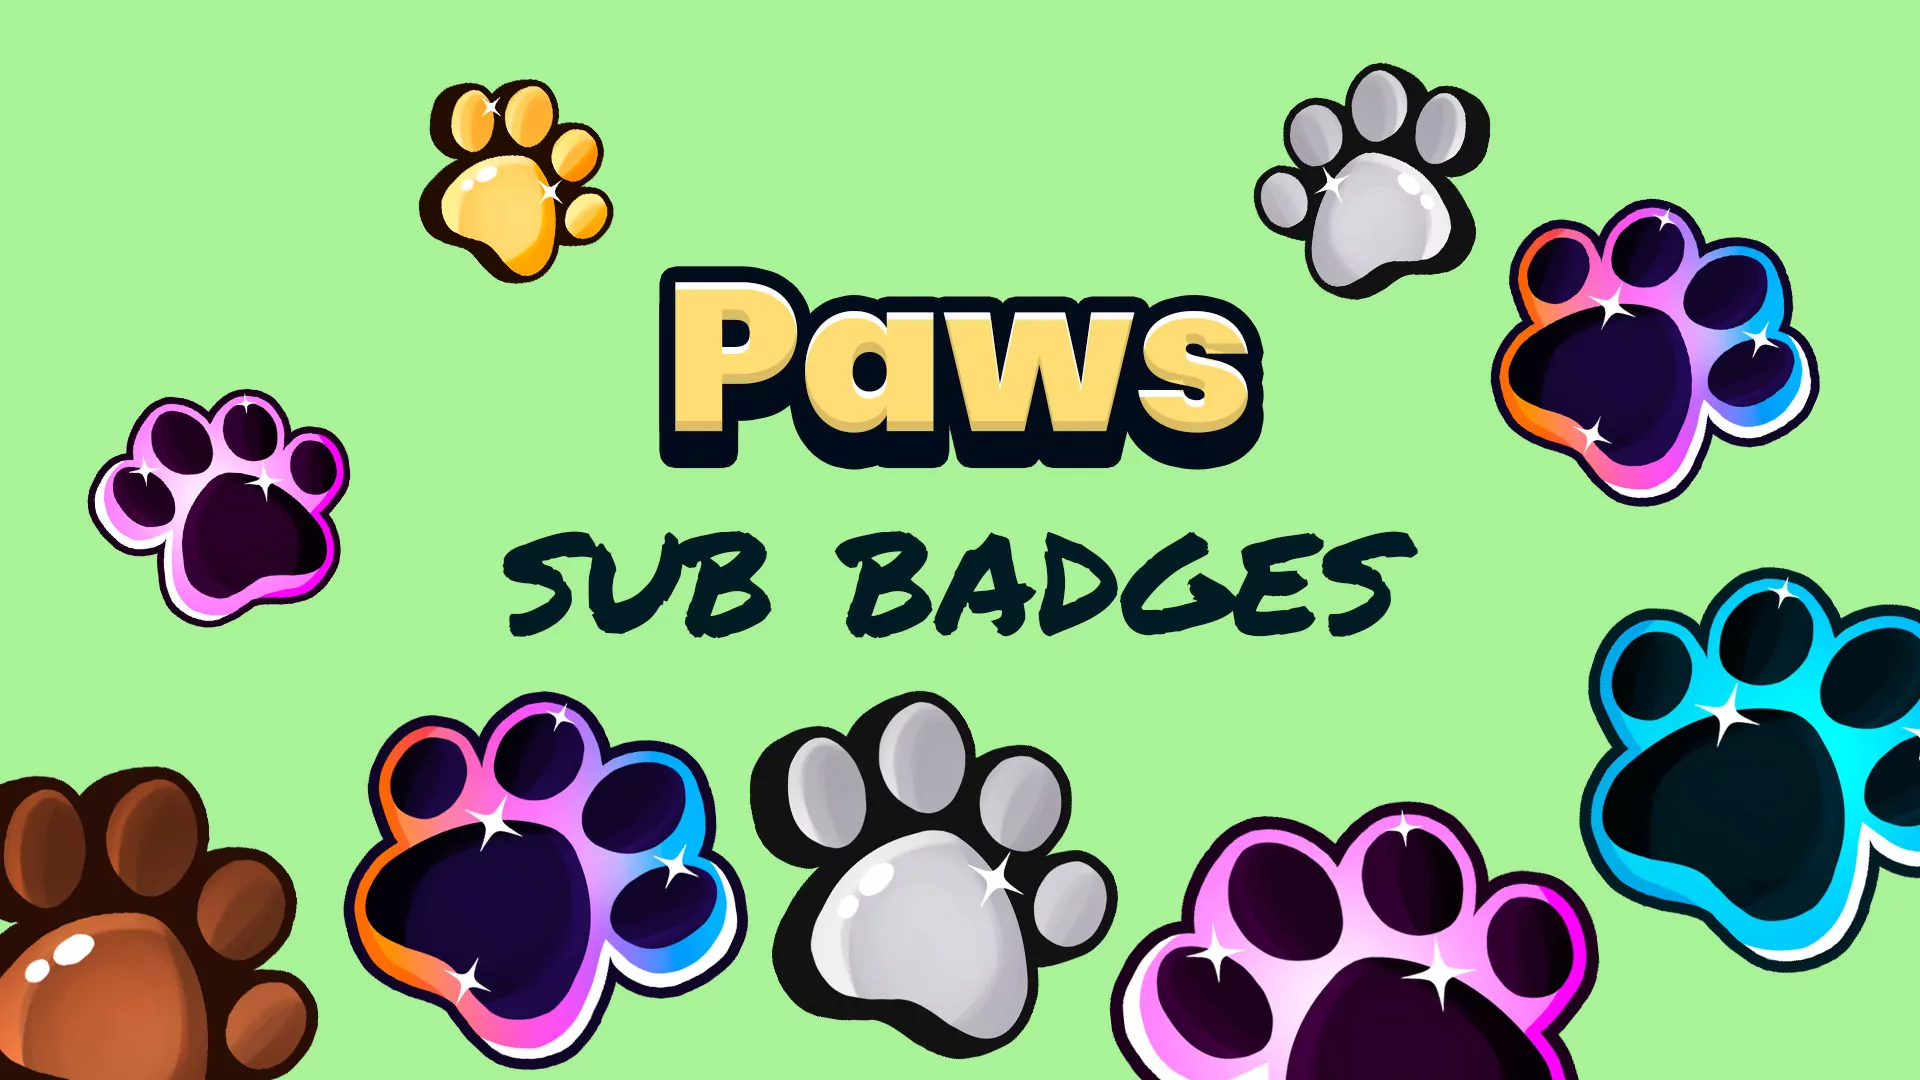 Paw Sub Badges - Main Image